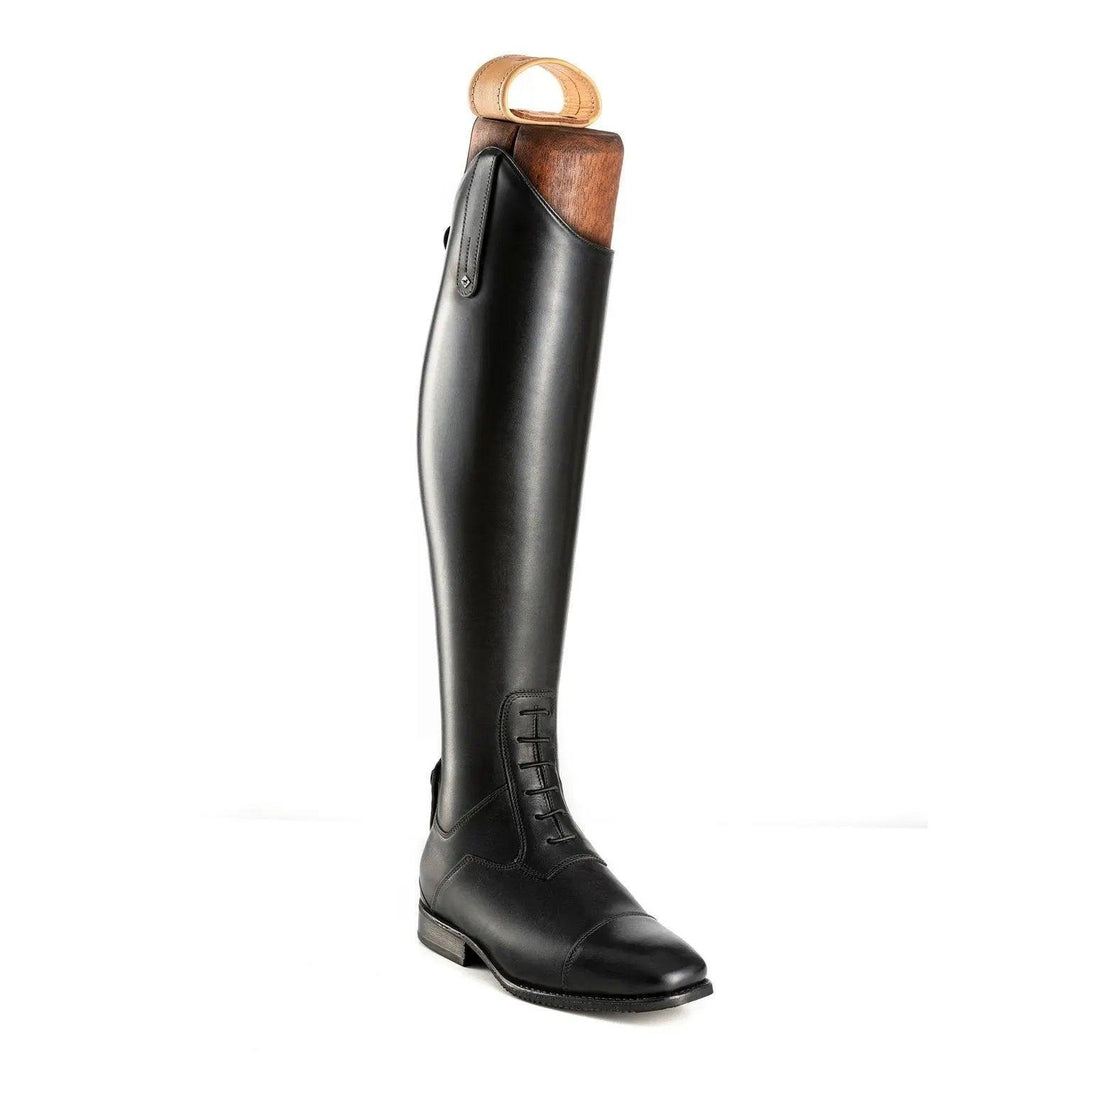 De Niro L 457 black boot Deniro boots